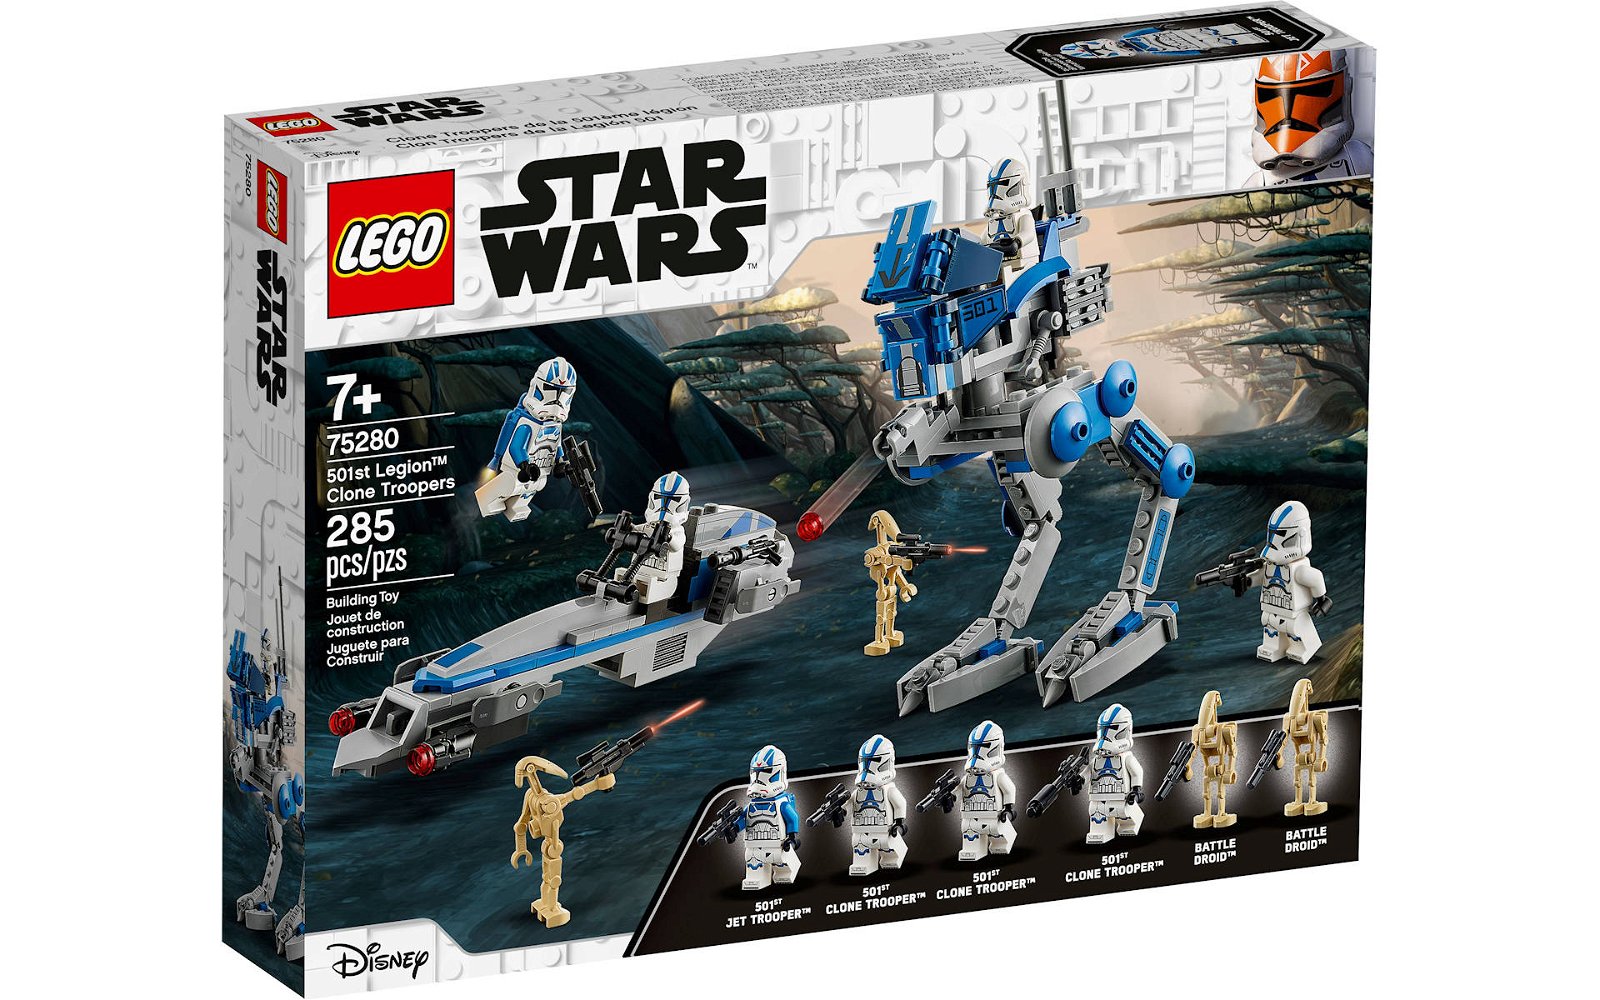 Immagine di LEGO Star Wars: arrivano i set The Skywalker Saga